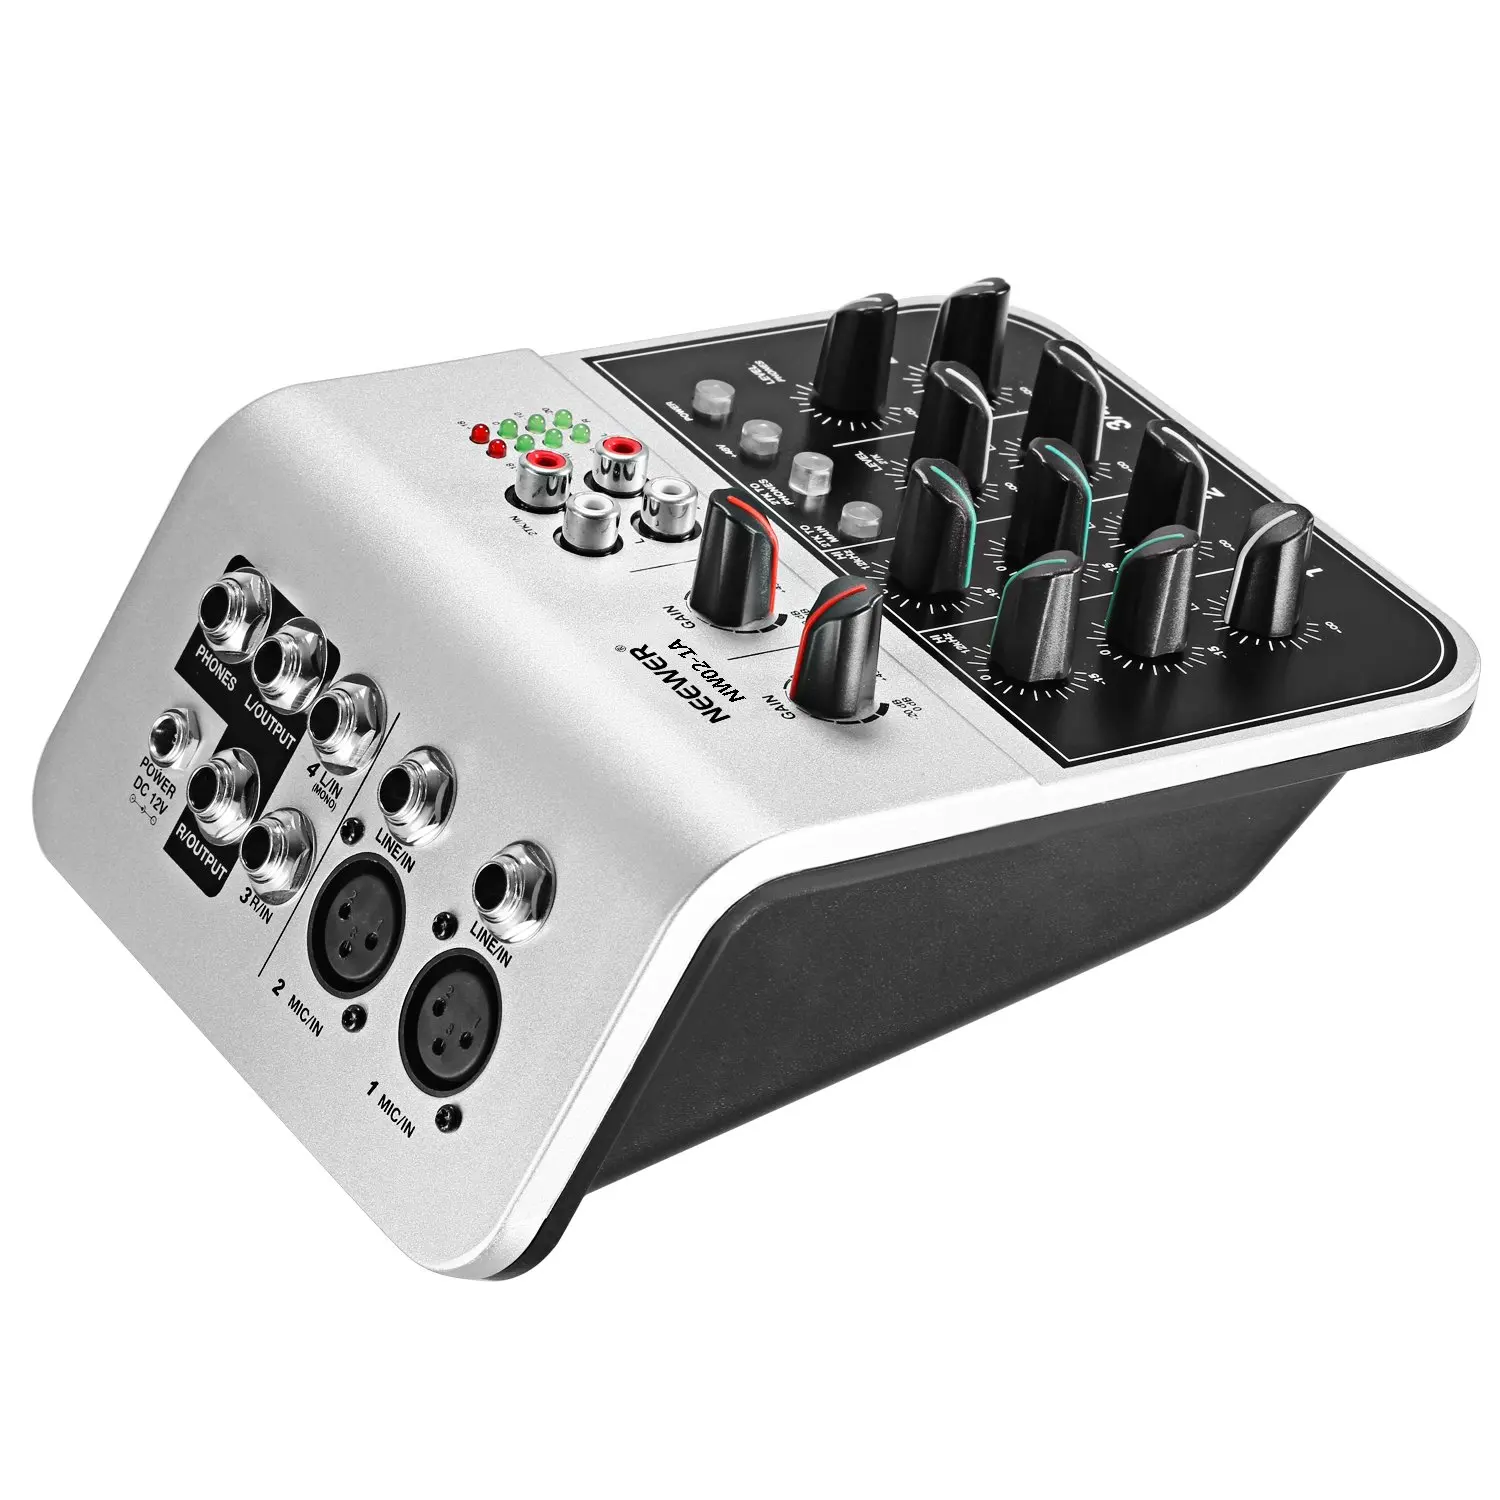 Neewer микшерная консоль Compact Audio Sound 2-микшер каналов для конденсаторного микрофона, w/48 V Phantom power 2 Band EQ 2-way стерео